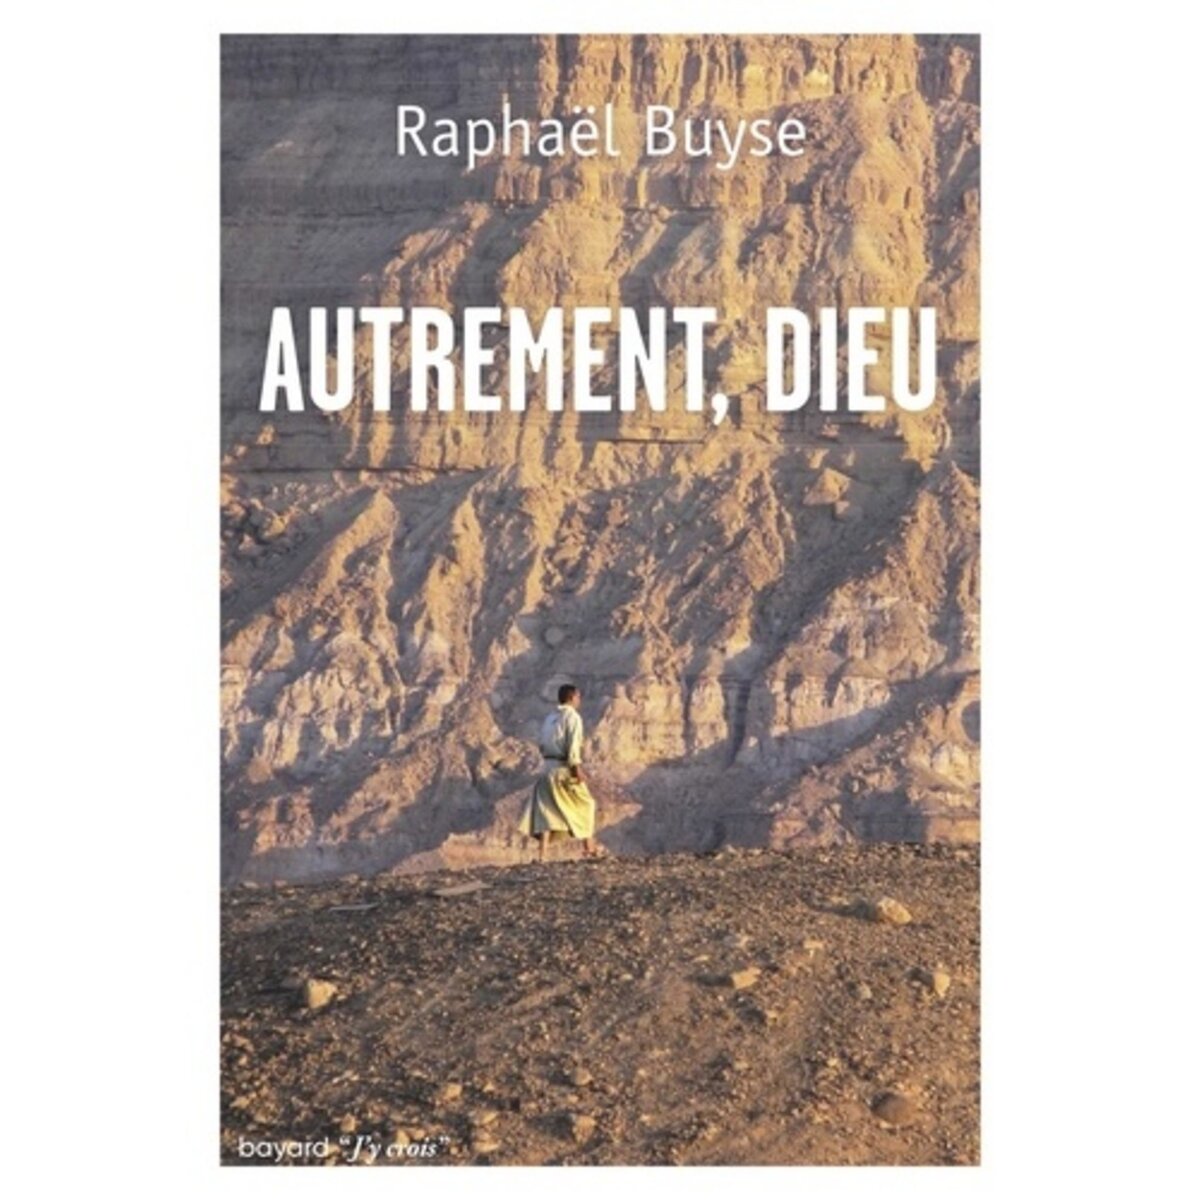  AUTREMENT, DIEU, Buyse Raphaël